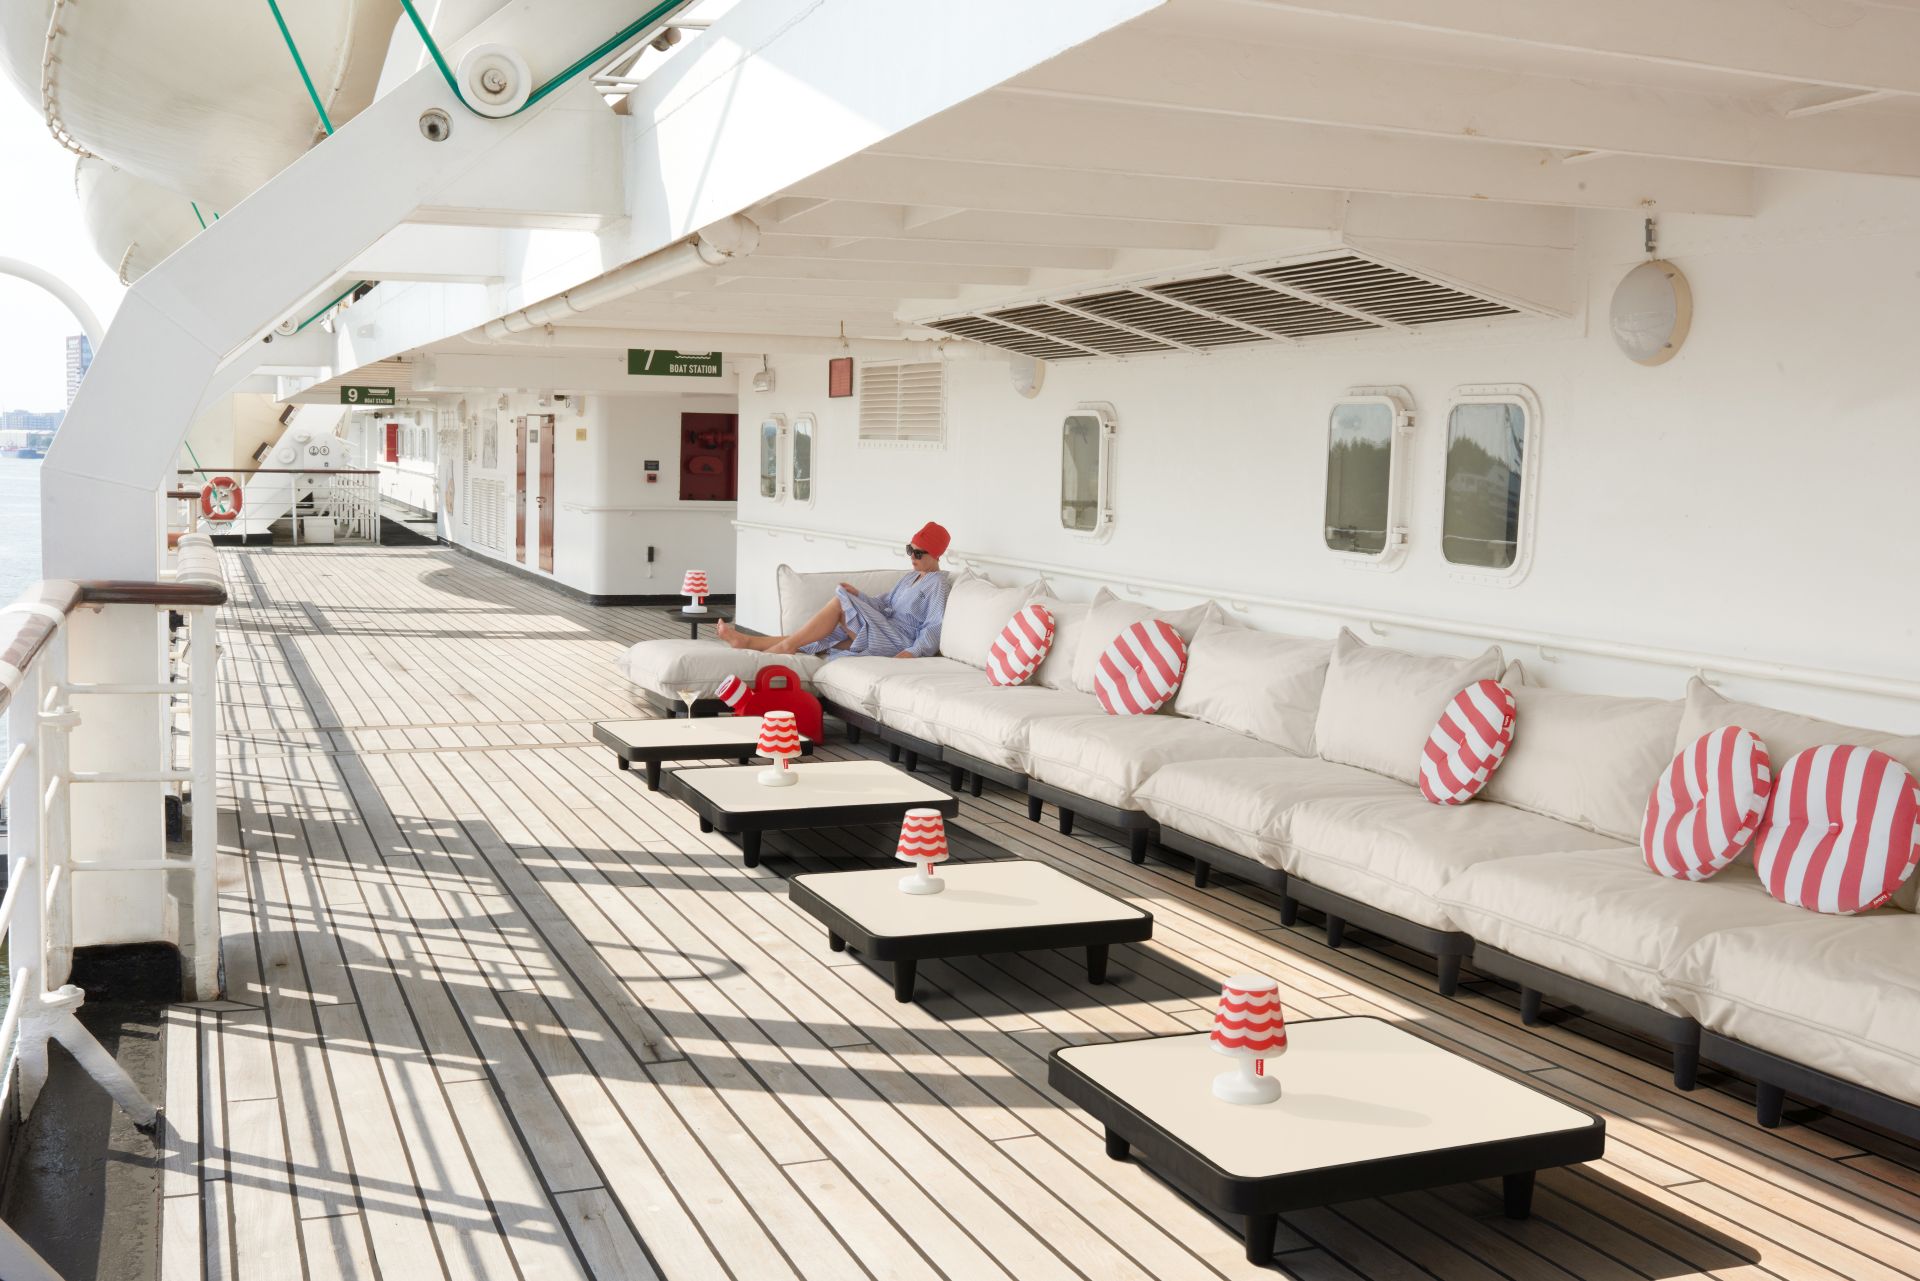 Modulare Fatboy Paletti Loungemöbel in einer langen Reihe an Deck eines Luxus-Kreuzfahrtschiffes.